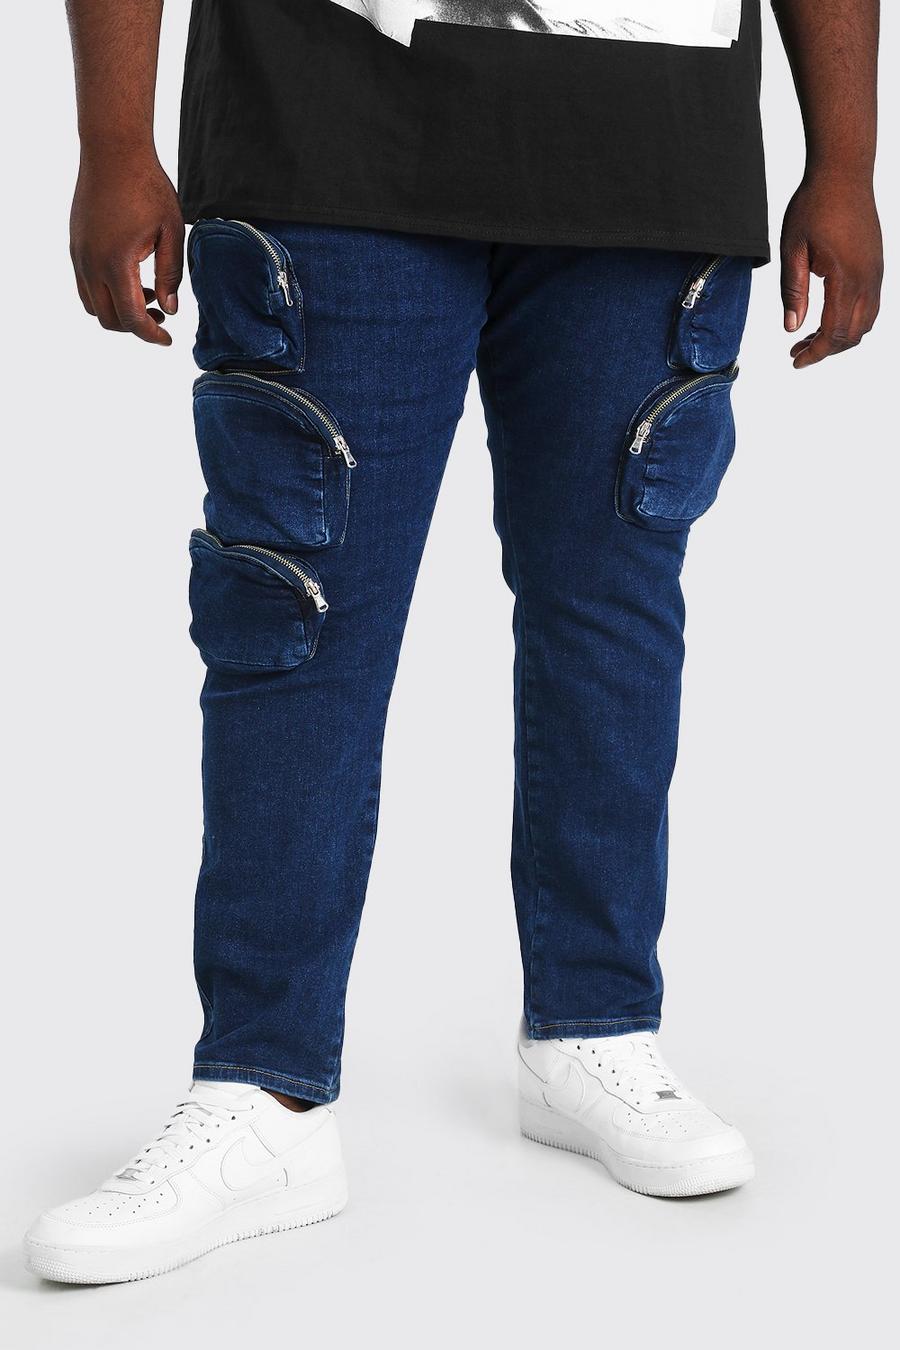 כחול סקיני ג'ינס עם כיסי רוכסן בסגנון דגמ"ח לגברים גדולים וגבוהים image number 1